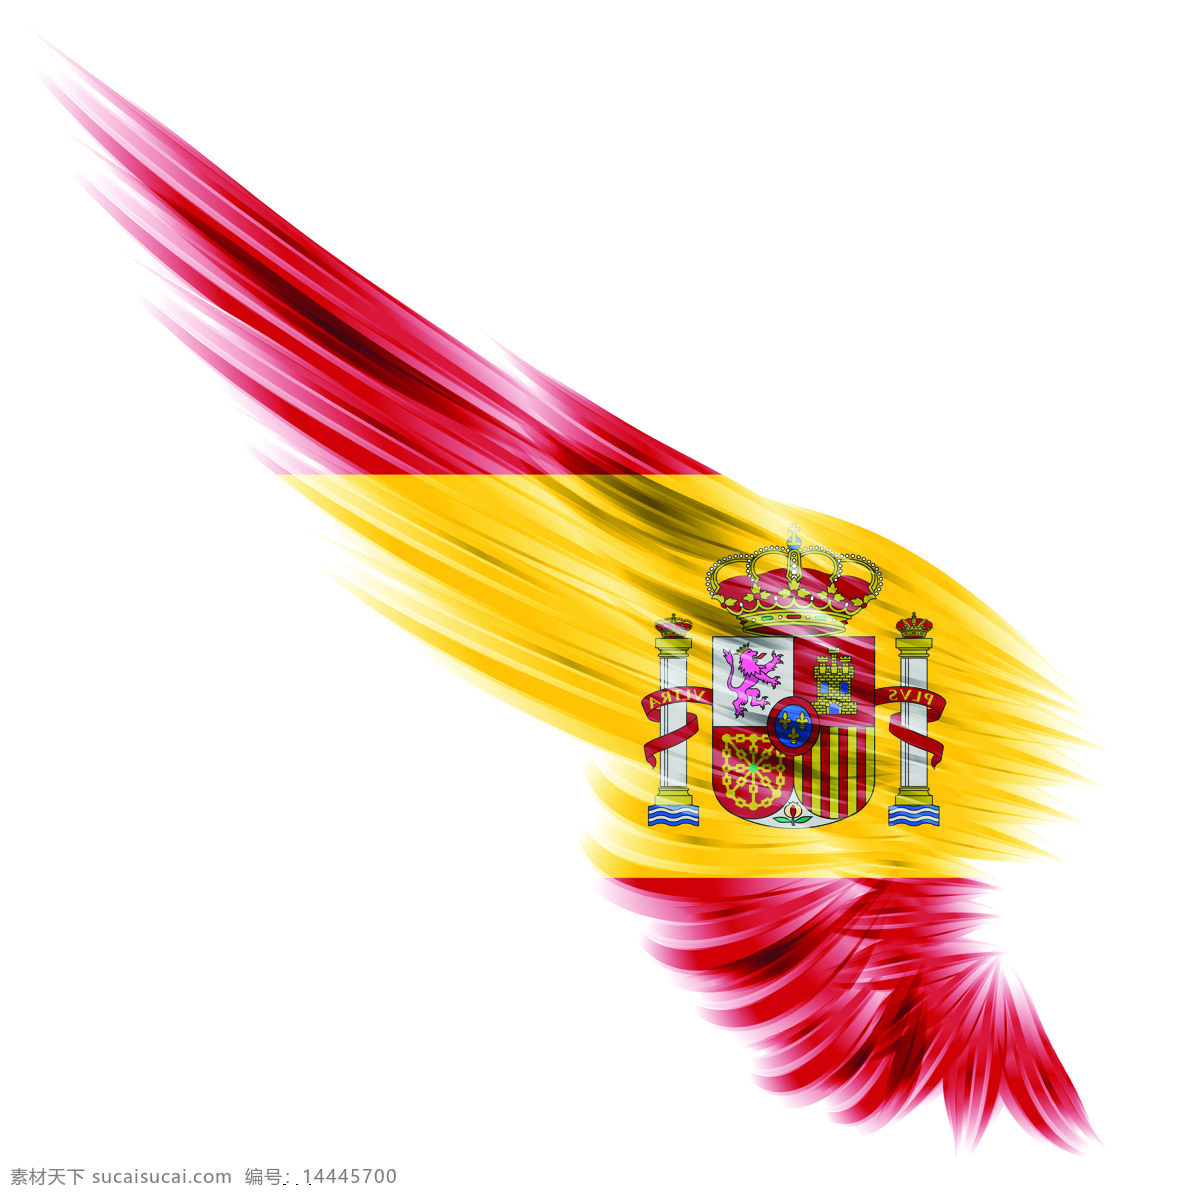 西班牙 国旗 创意 翅膀 变形 高清素材 西班牙国旗 创意翅膀变形 风景 生活 旅游餐饮